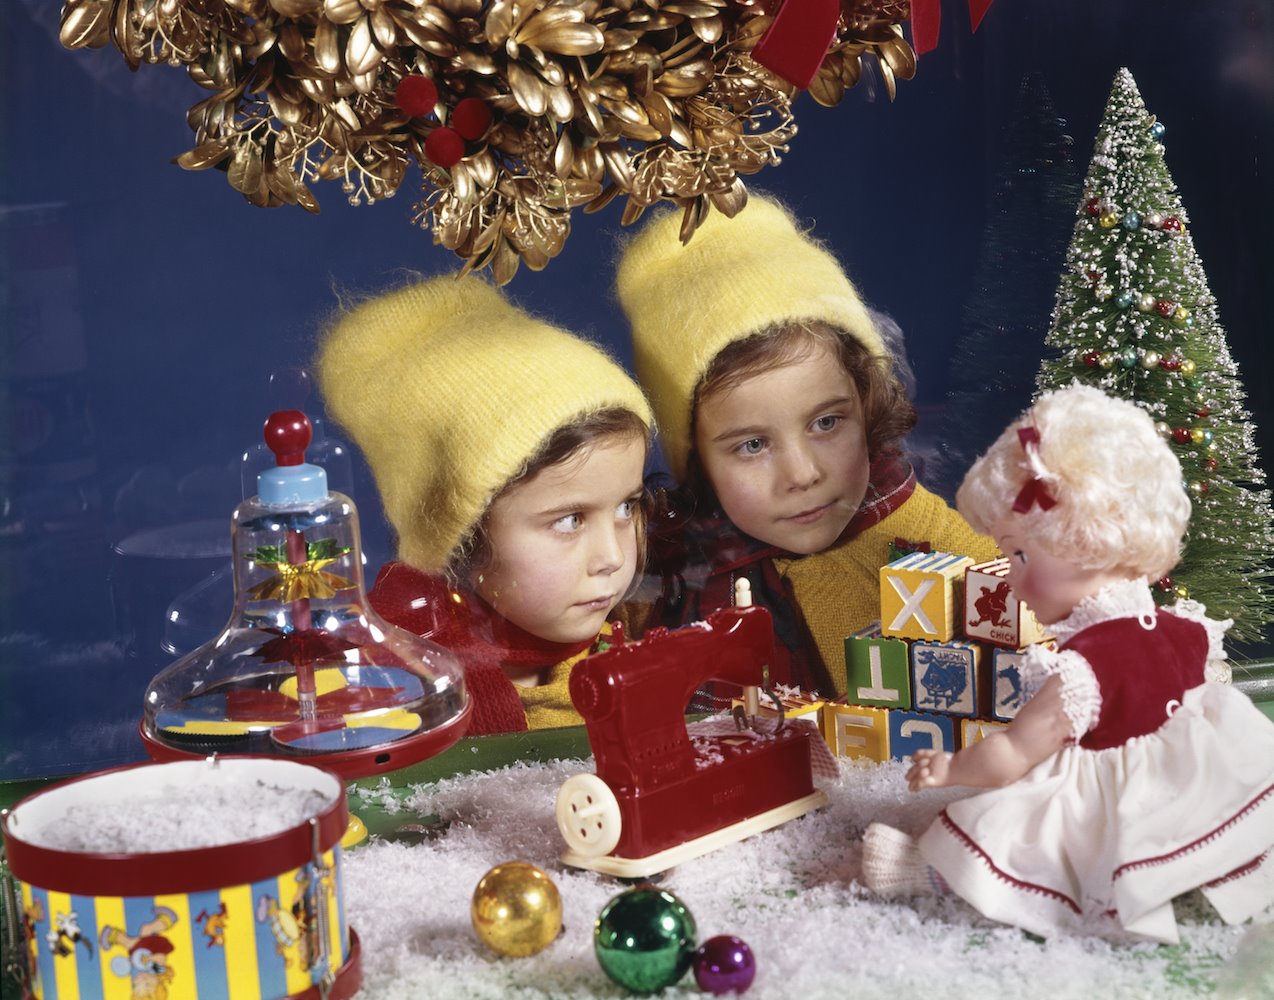 NIñas mirando una muñeca de Navidad. 1964